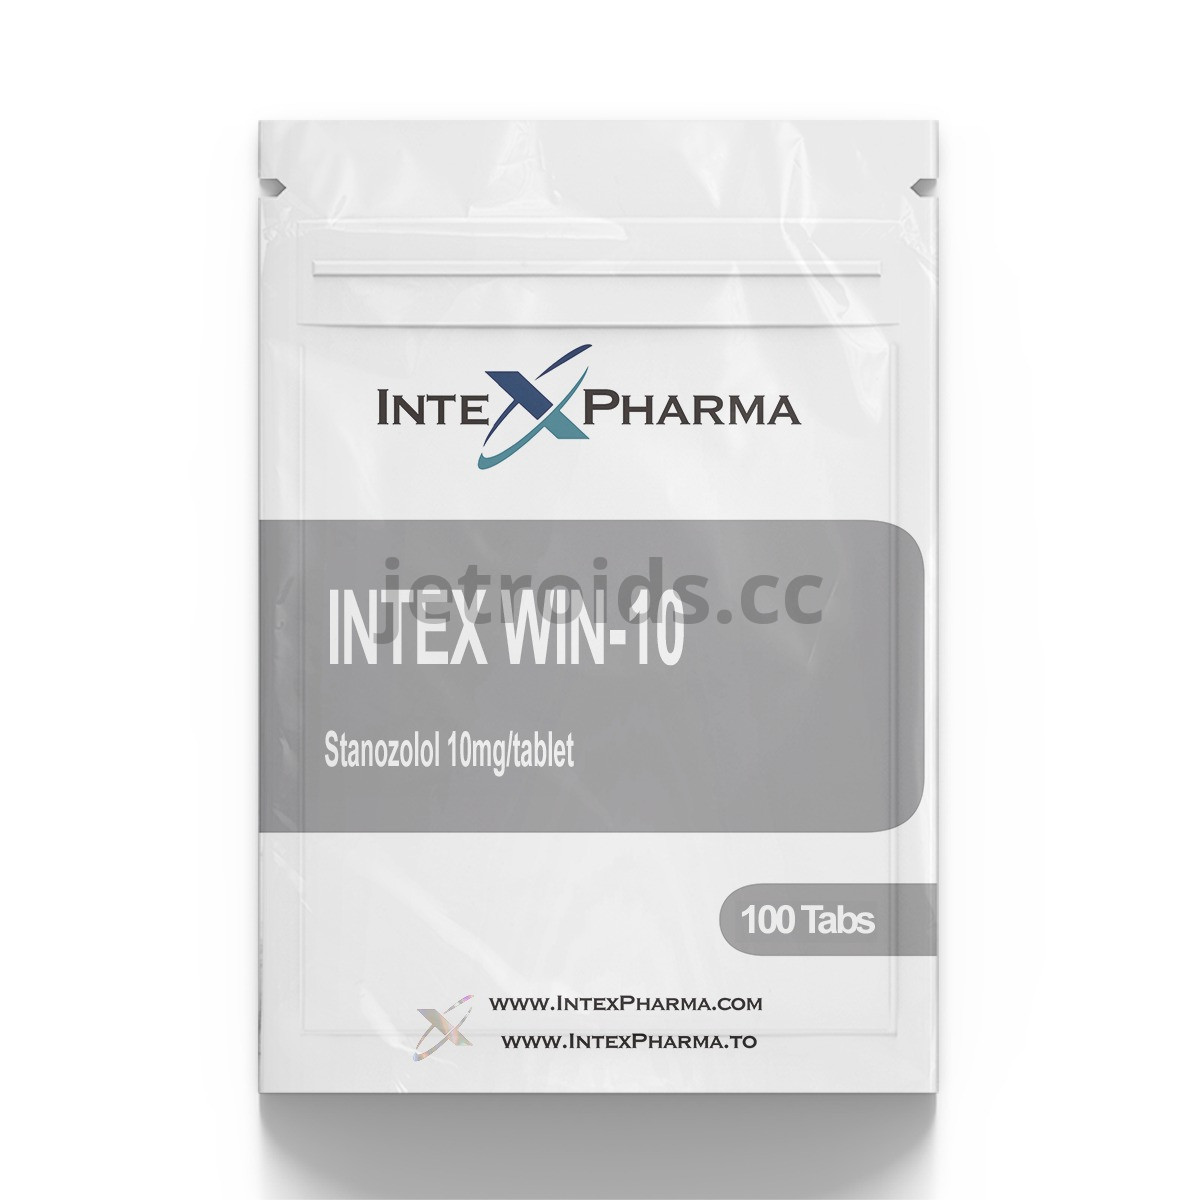 IntexPharma Intex WIN-10 Product Info